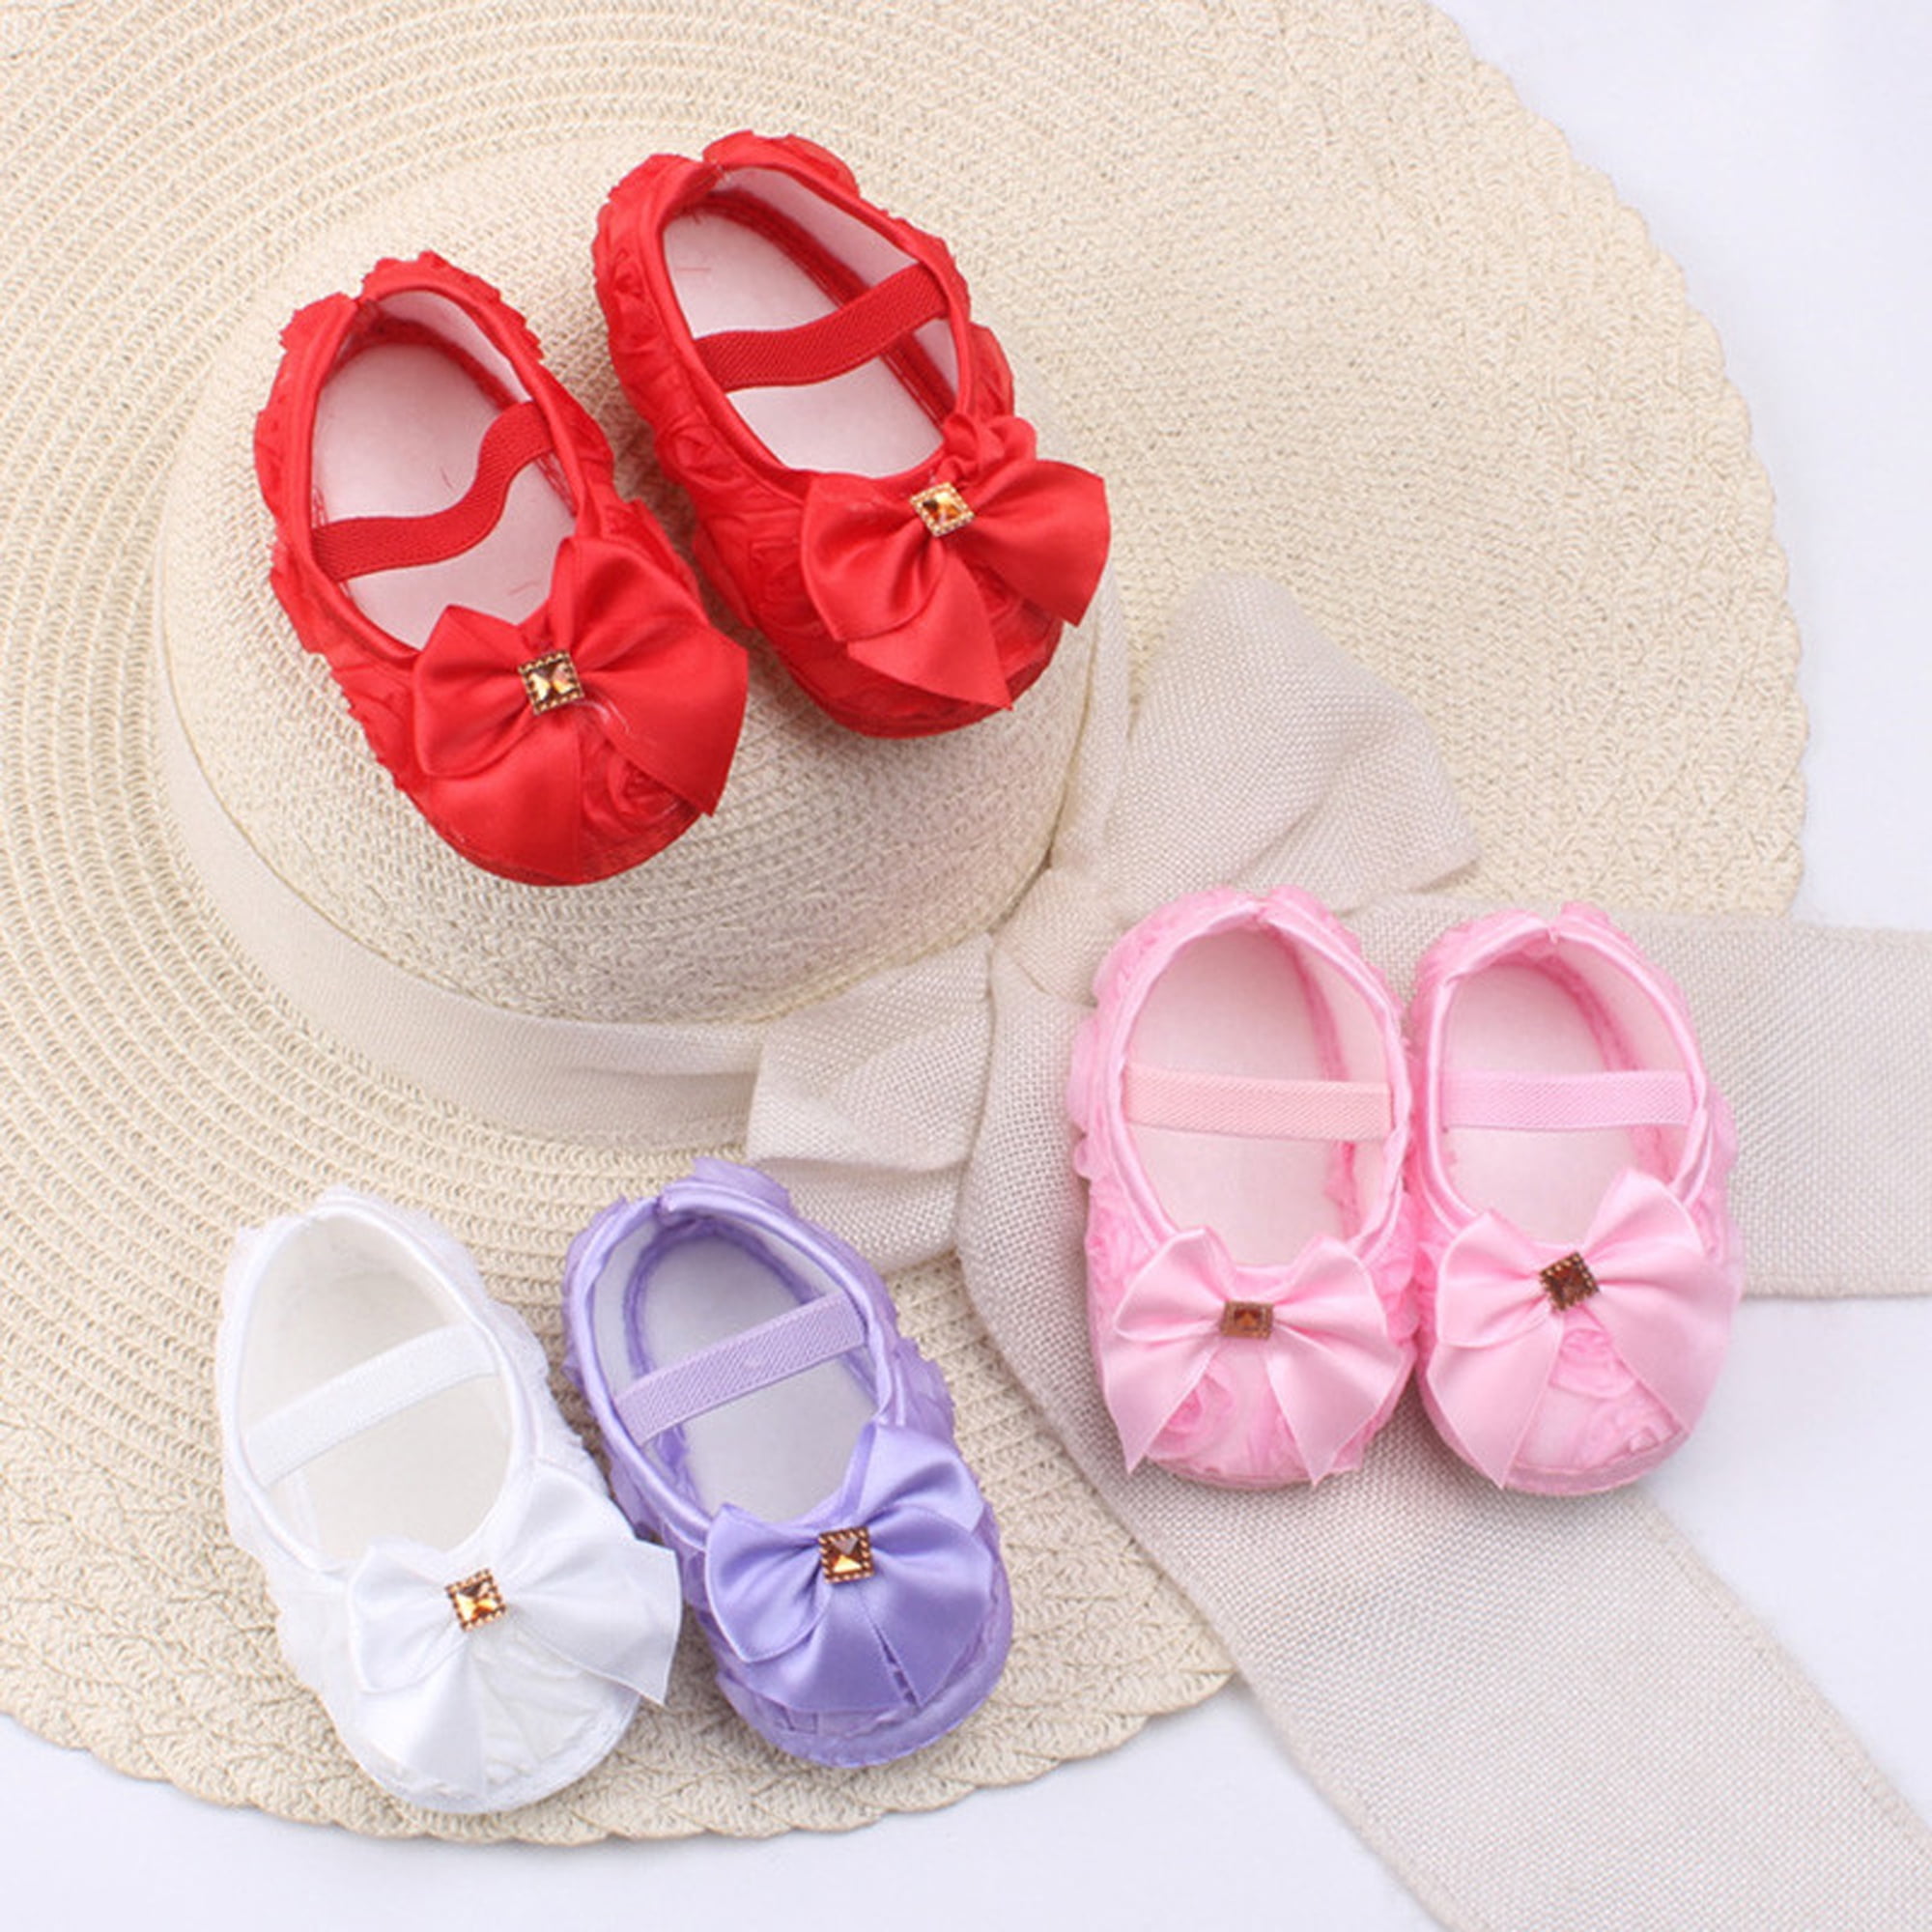 White Soft Sole Baby Sandals (Newborn-18mths) - Matalan